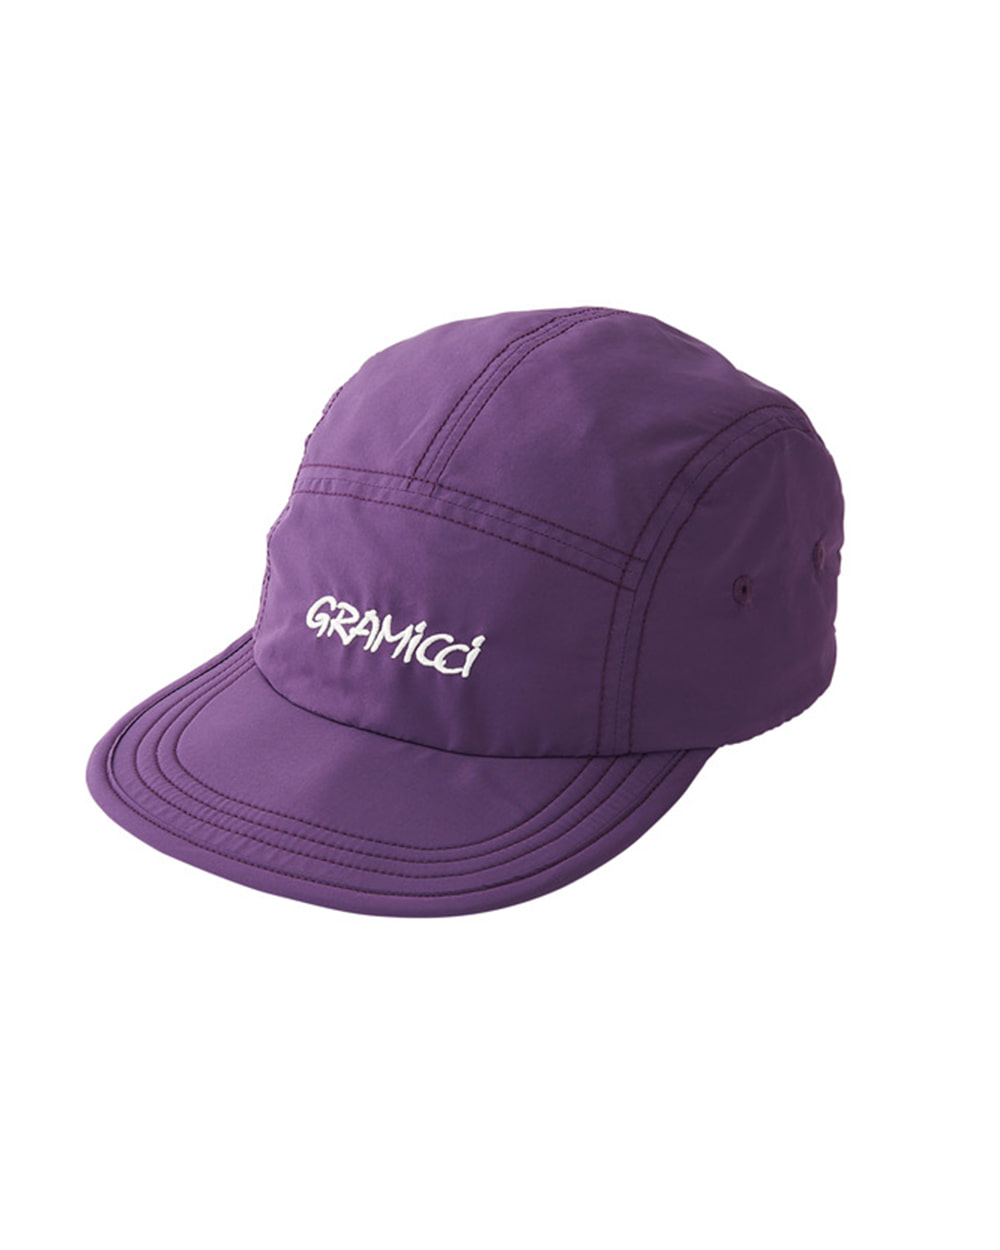 그라미치 SHELL JET CAP (Purple)